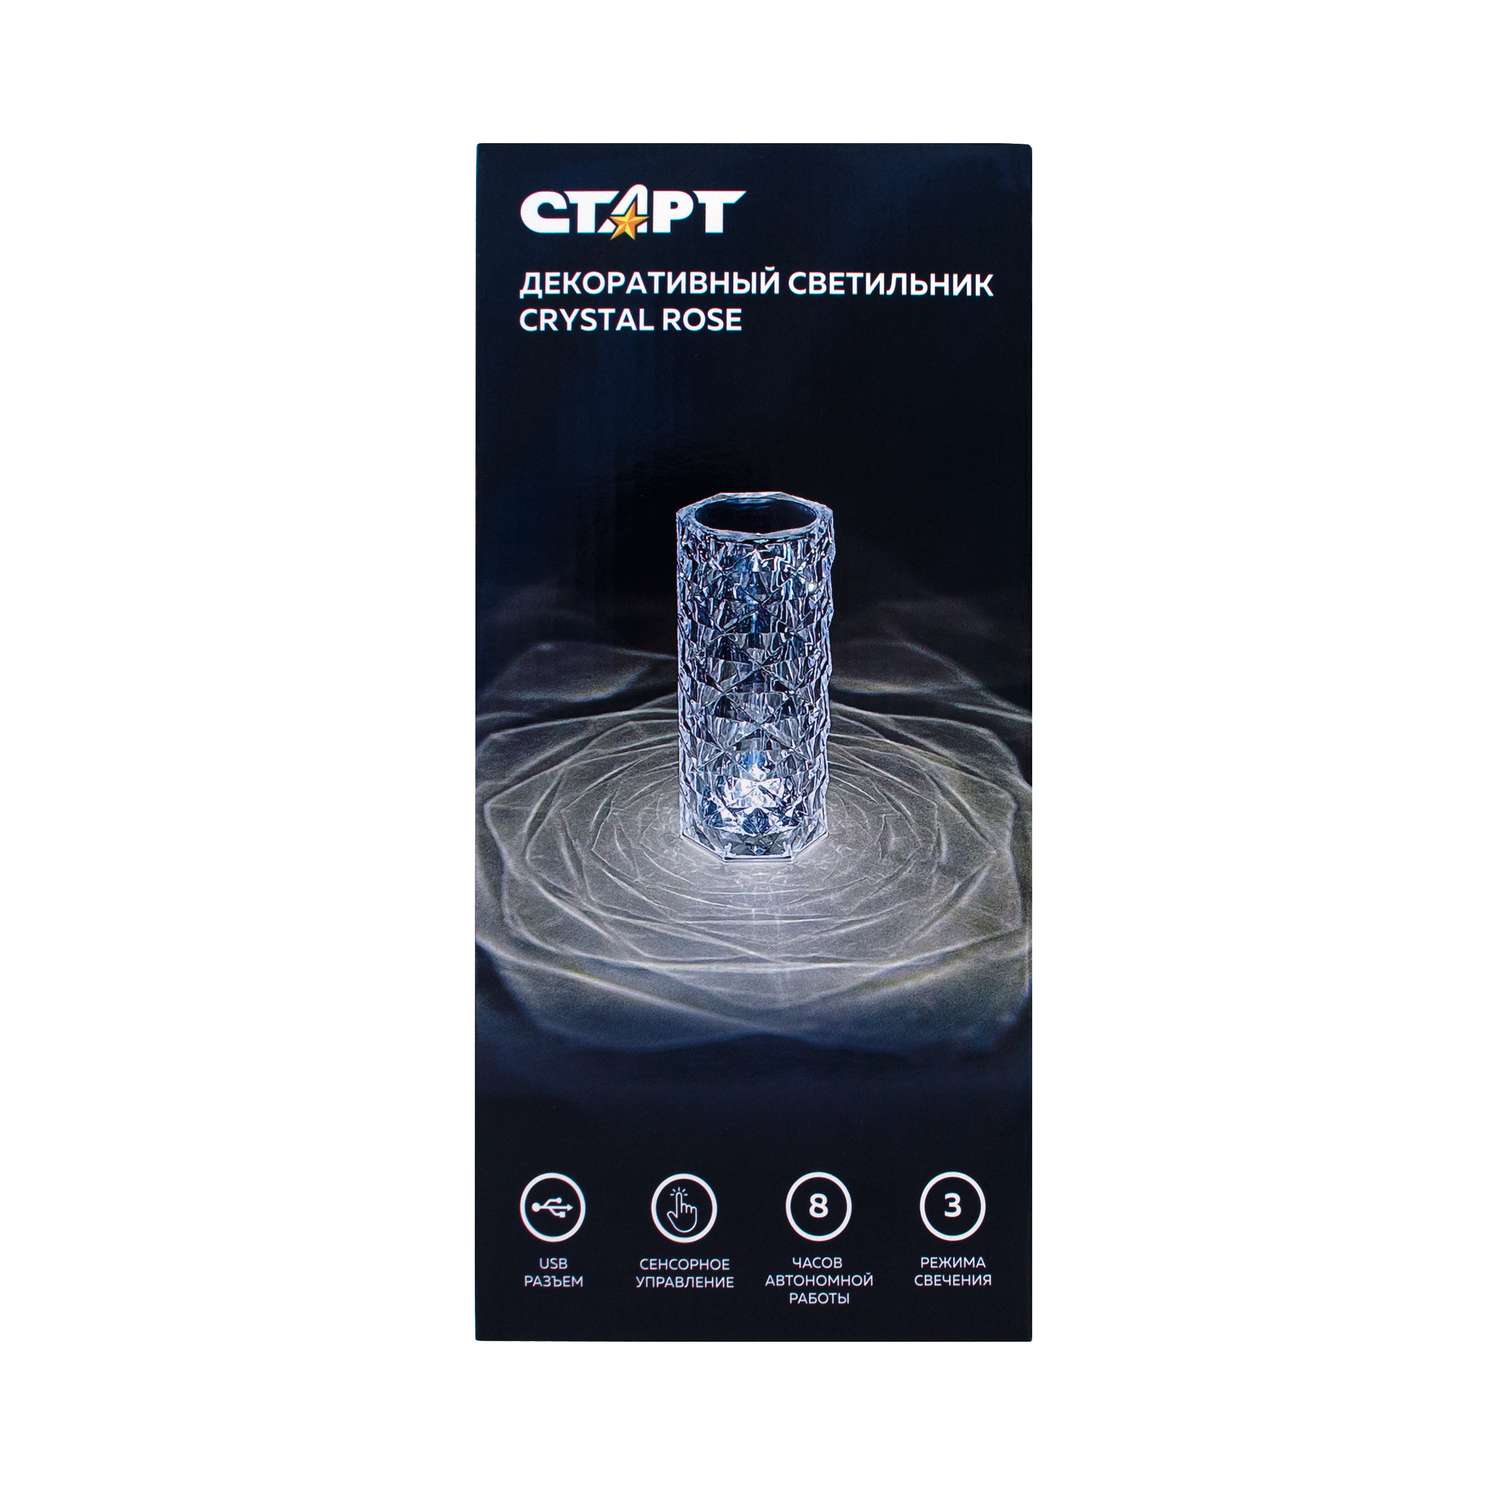 Светильник ночник СТАРТ декоративный кристаллической формы в виде розы Crystal Rose - фото 2